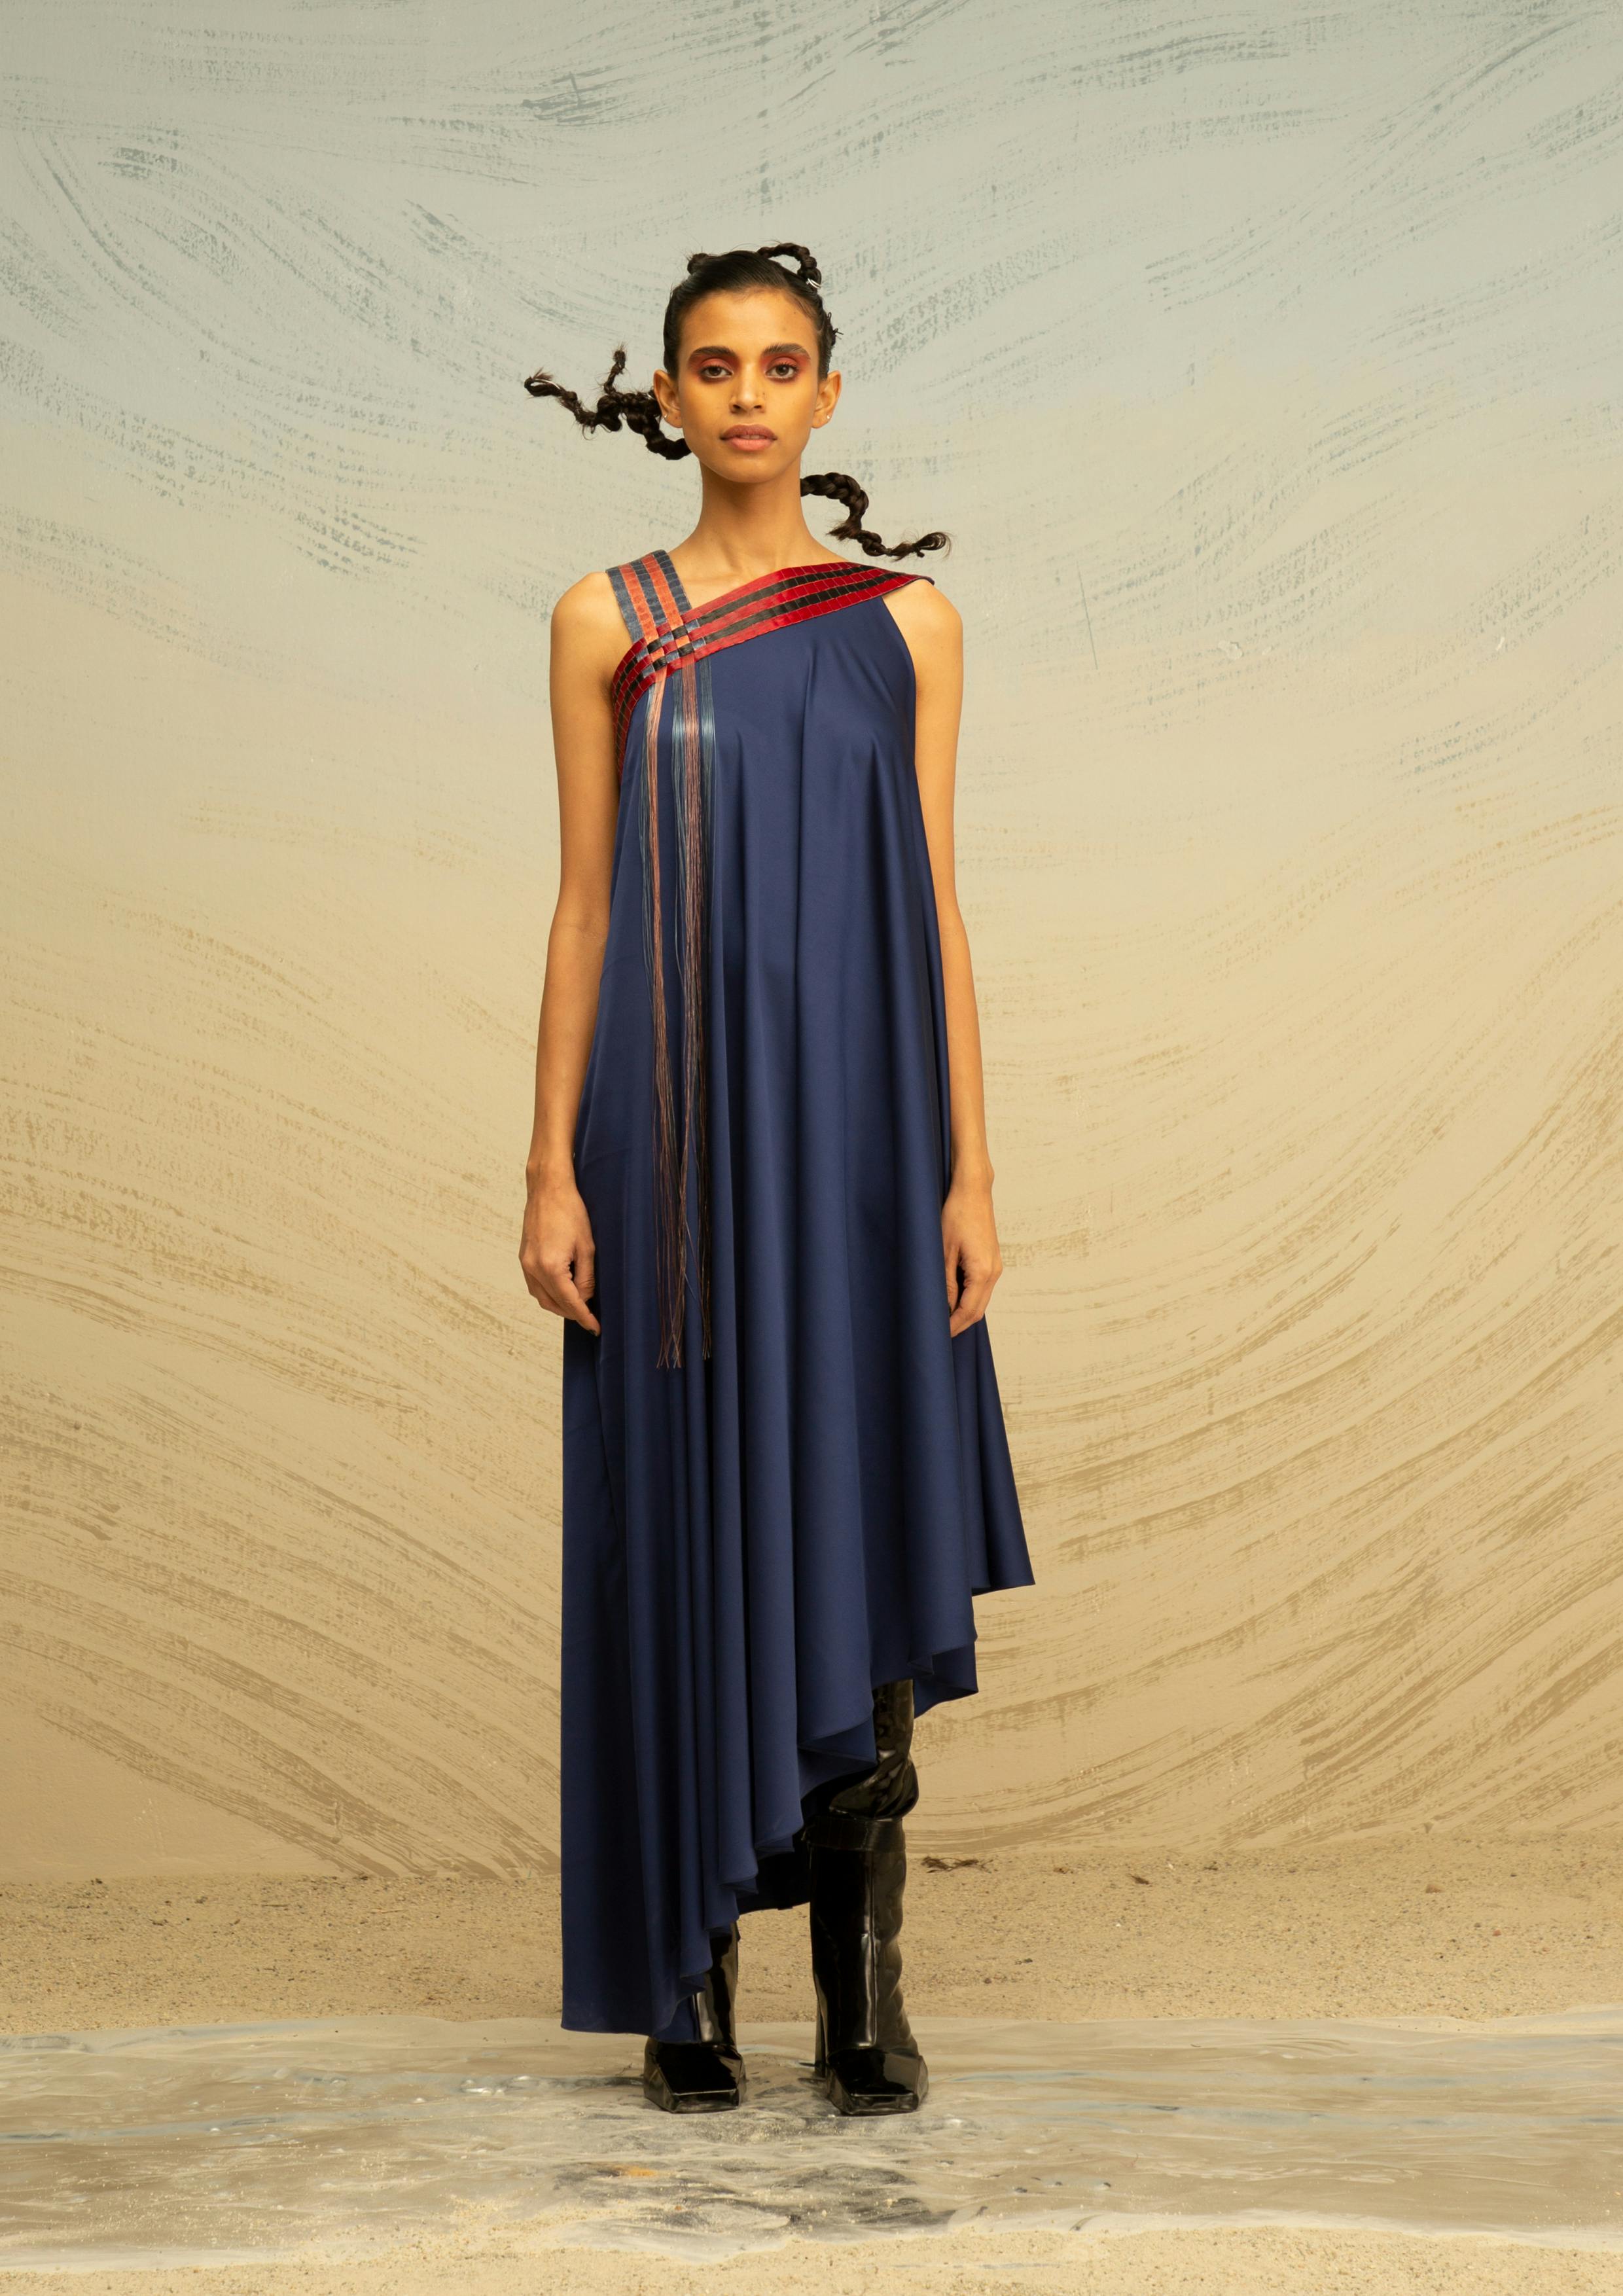 Gathered Chiffon Dress with Arc panels, a product by AKHL